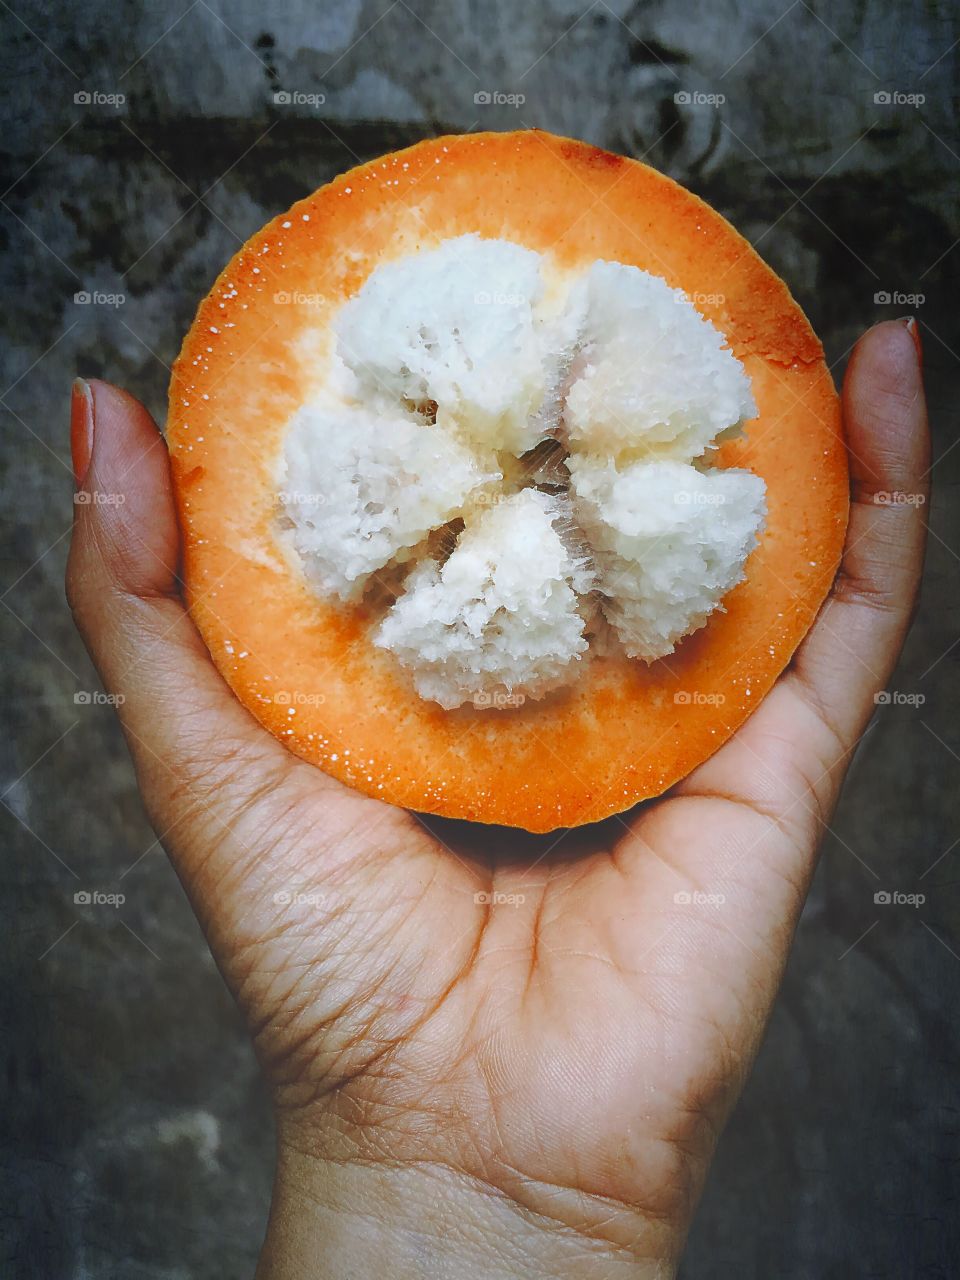 Cotton fruit. A hand holding a cotton fruit.